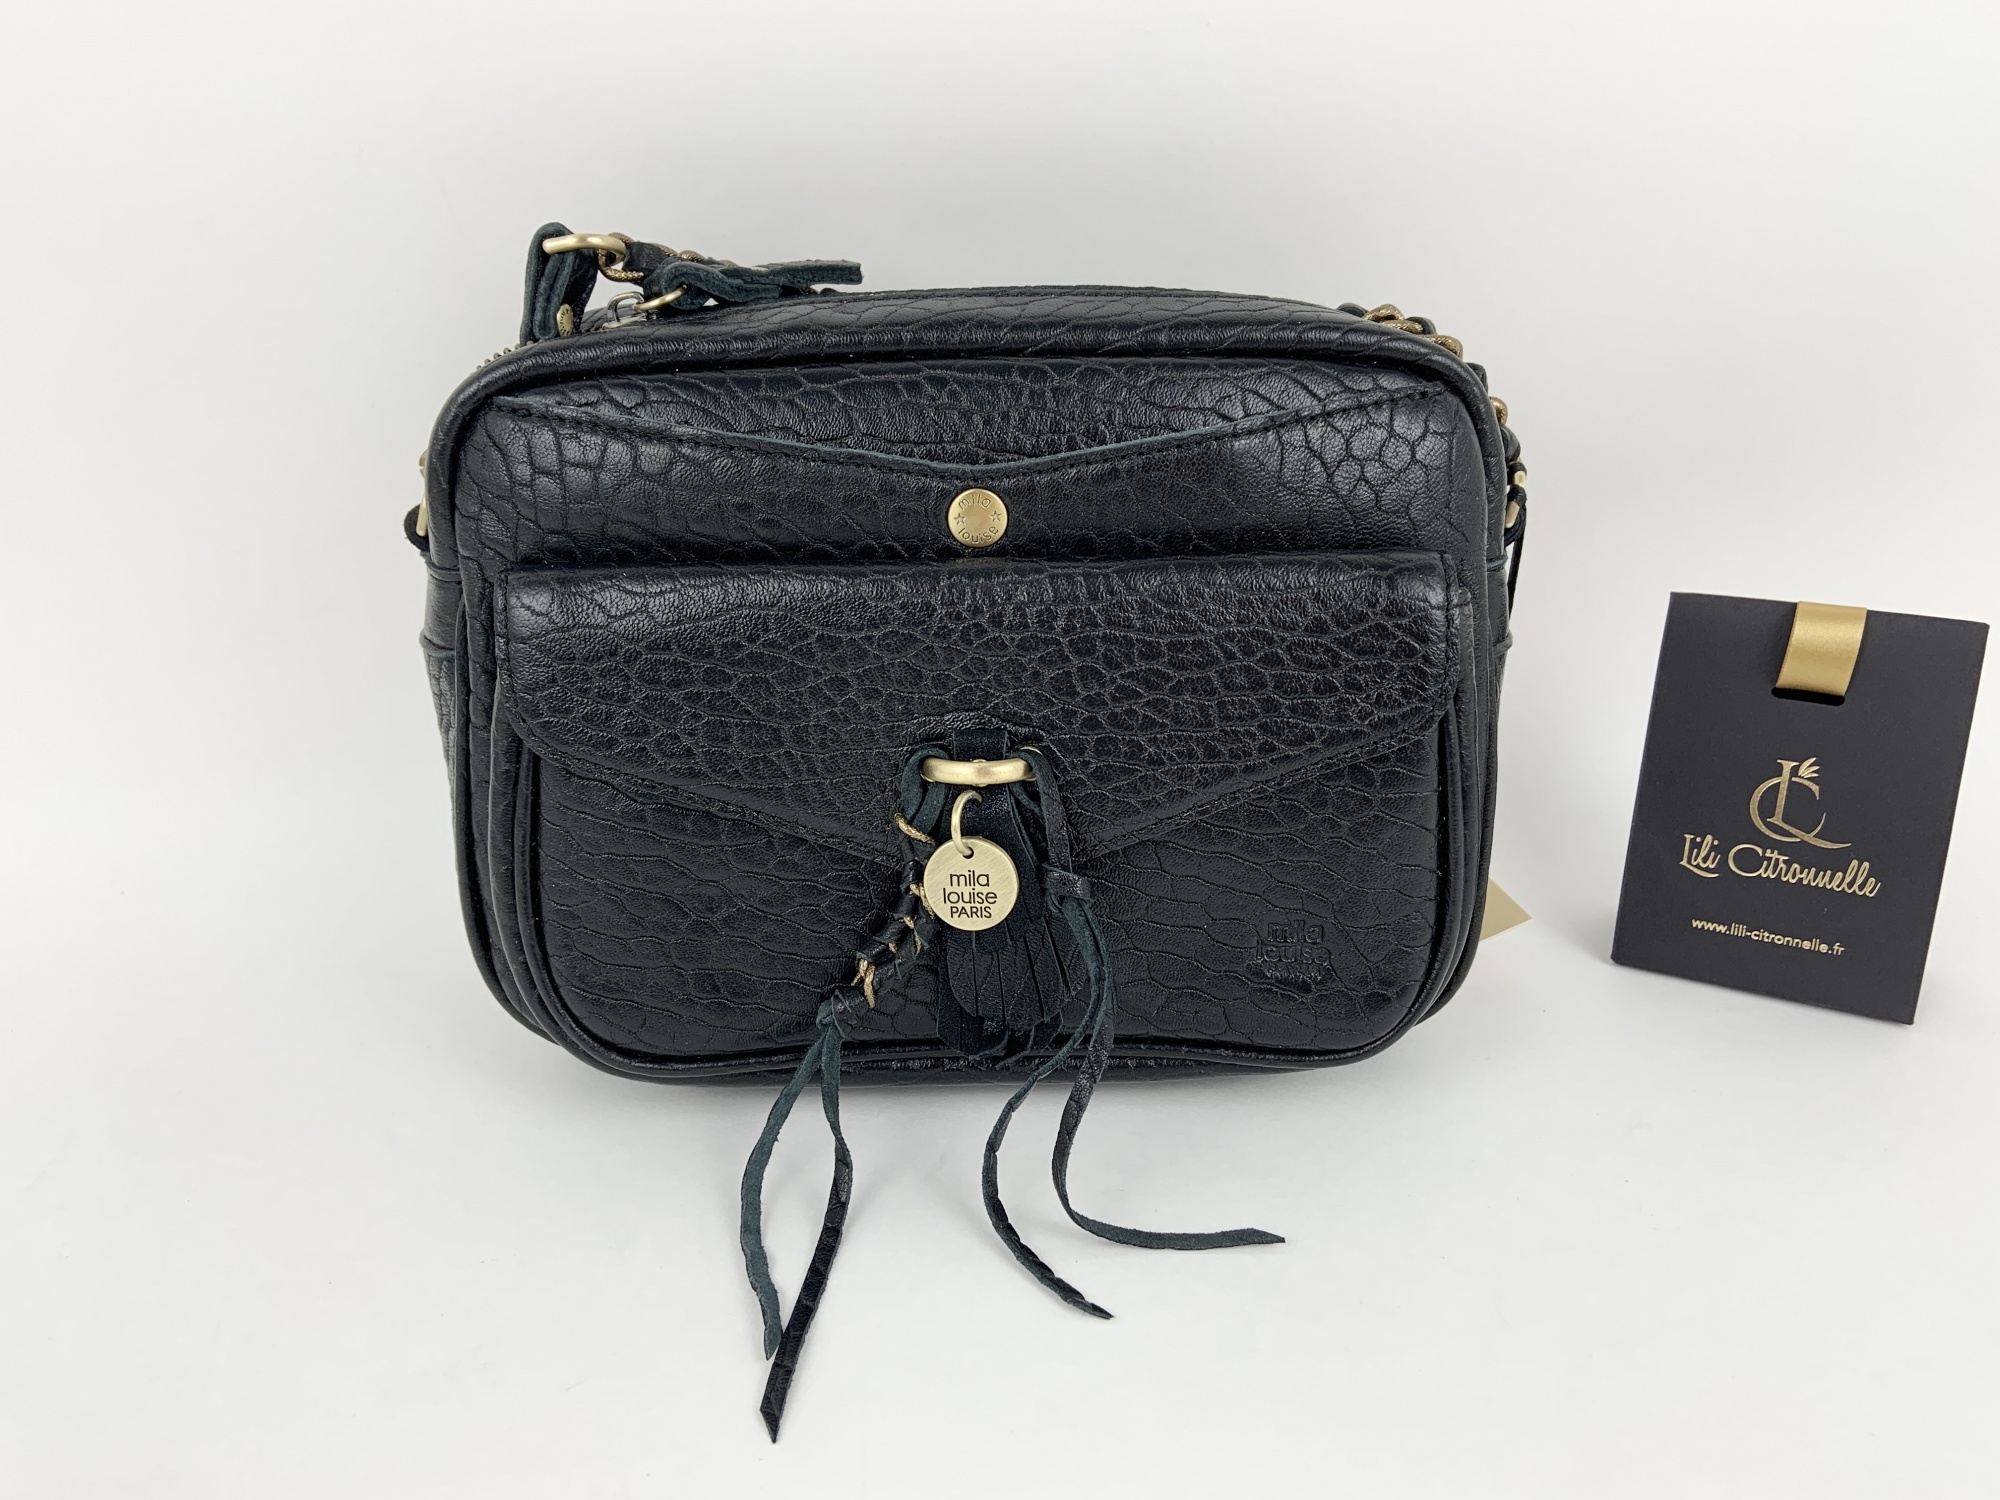 Orelia EX BLACK bag €185 MILA LOUISE New collection